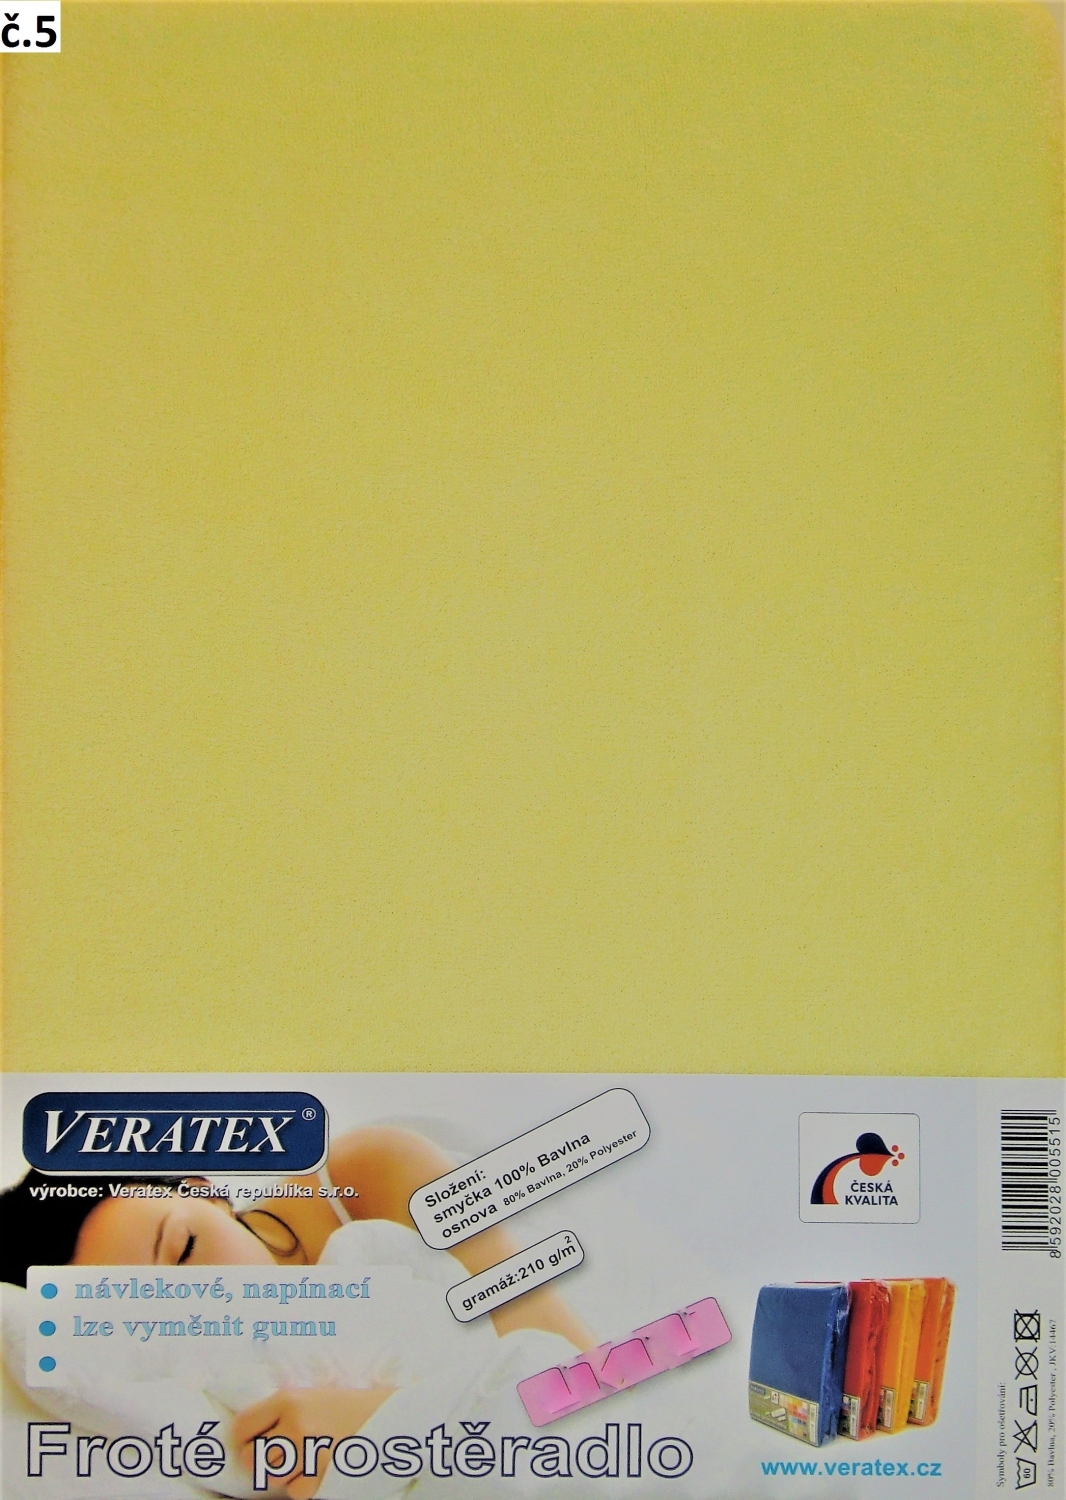 Veratex Froté prostěradlo 130x200/16 cm (č. 5-sv.žlutá)